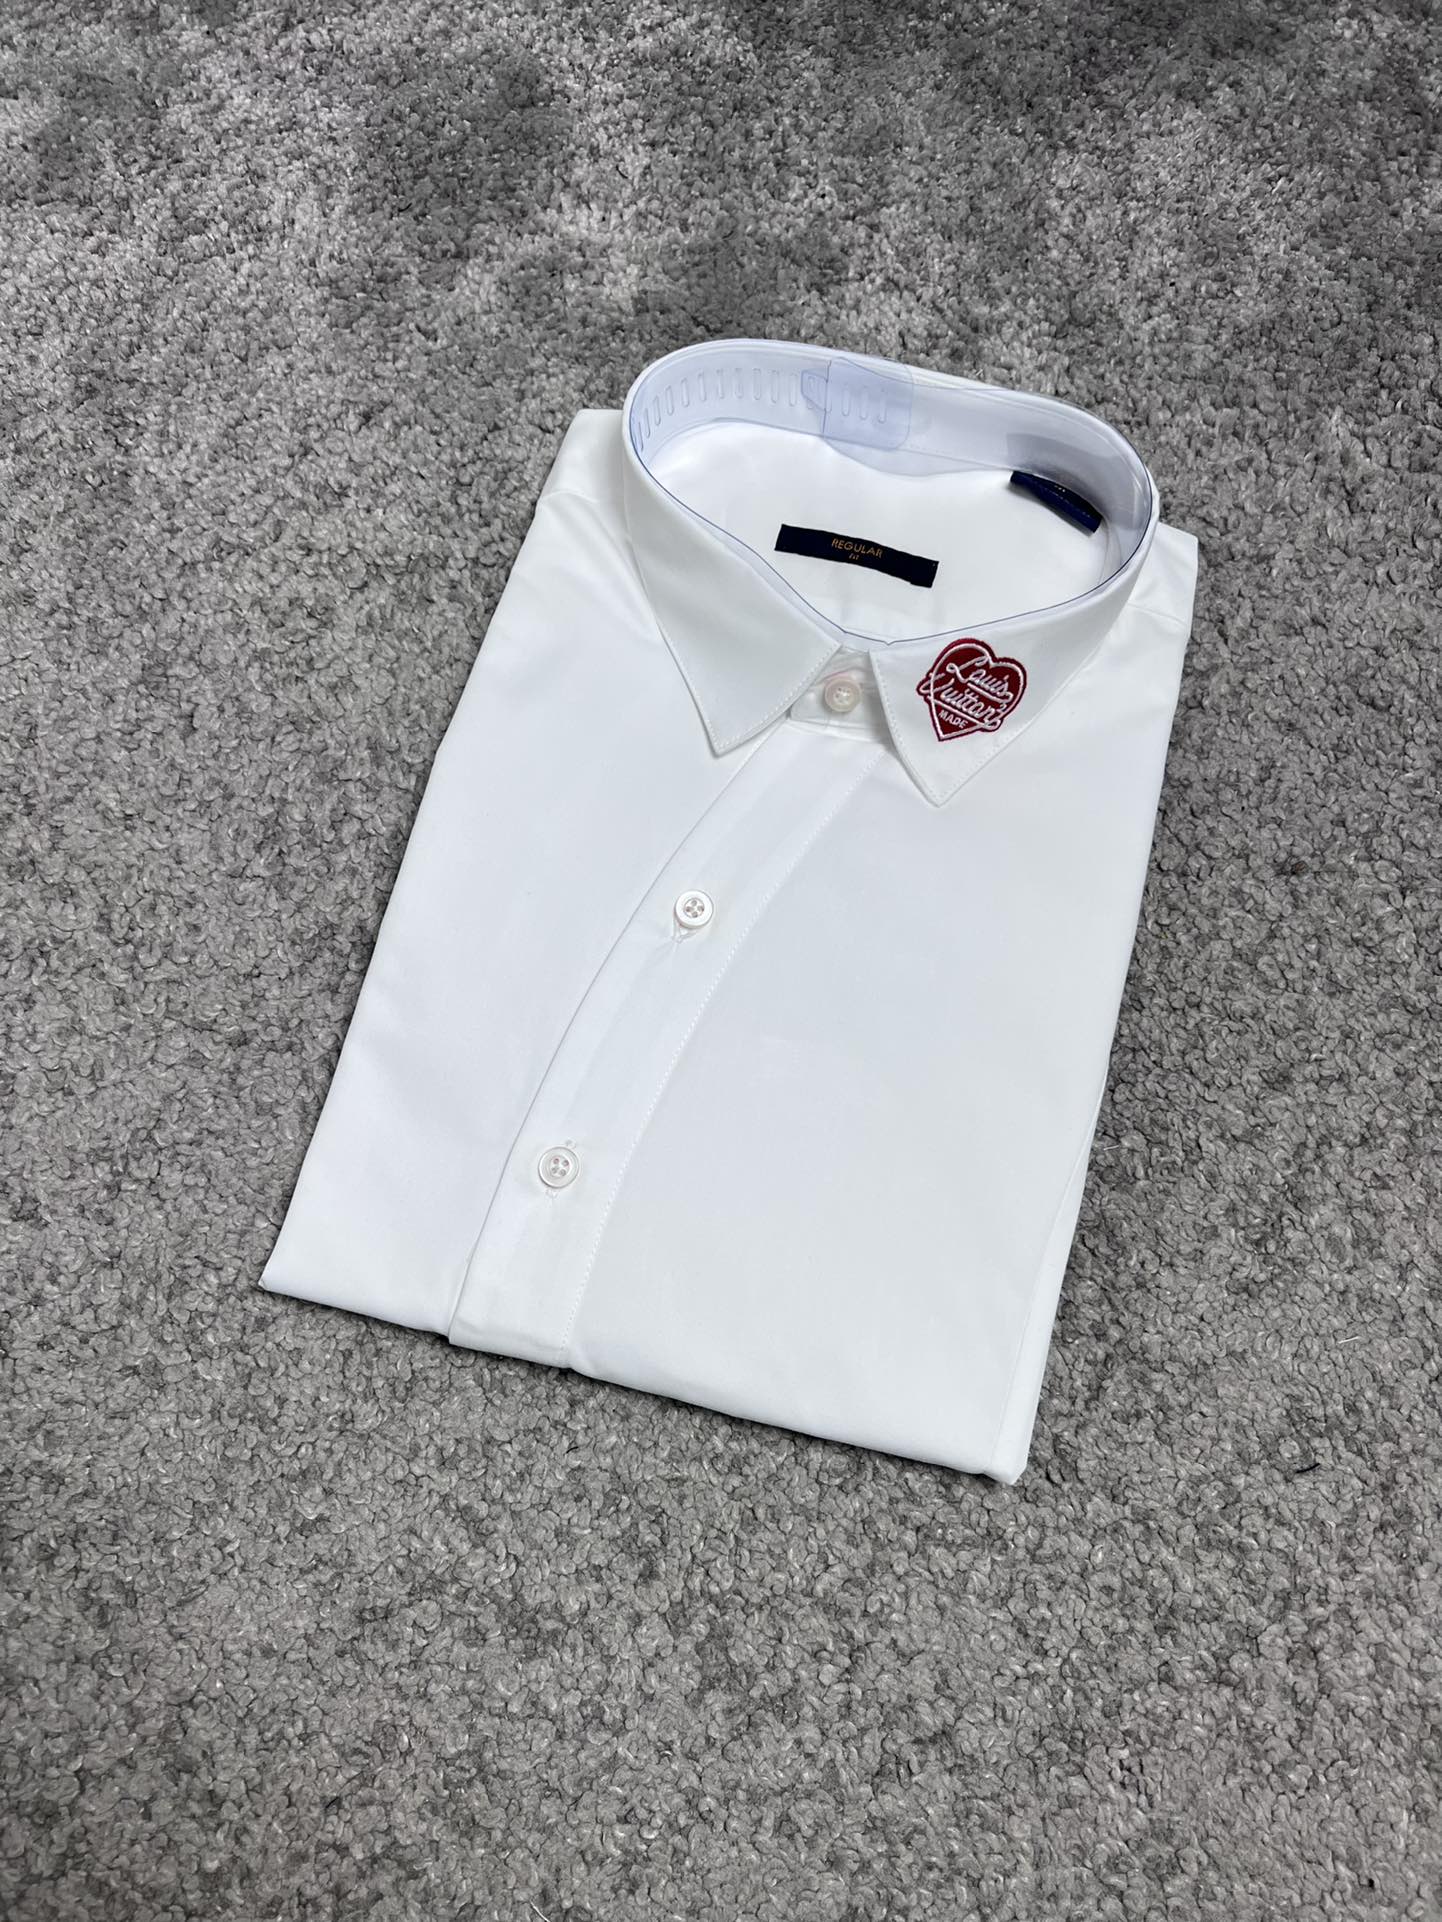 Lv驴家24SS春夏新款衬衫高端品质最新设计风格白贝壳扣领口️设计时尚百搭黑白码数SMLXLXXL